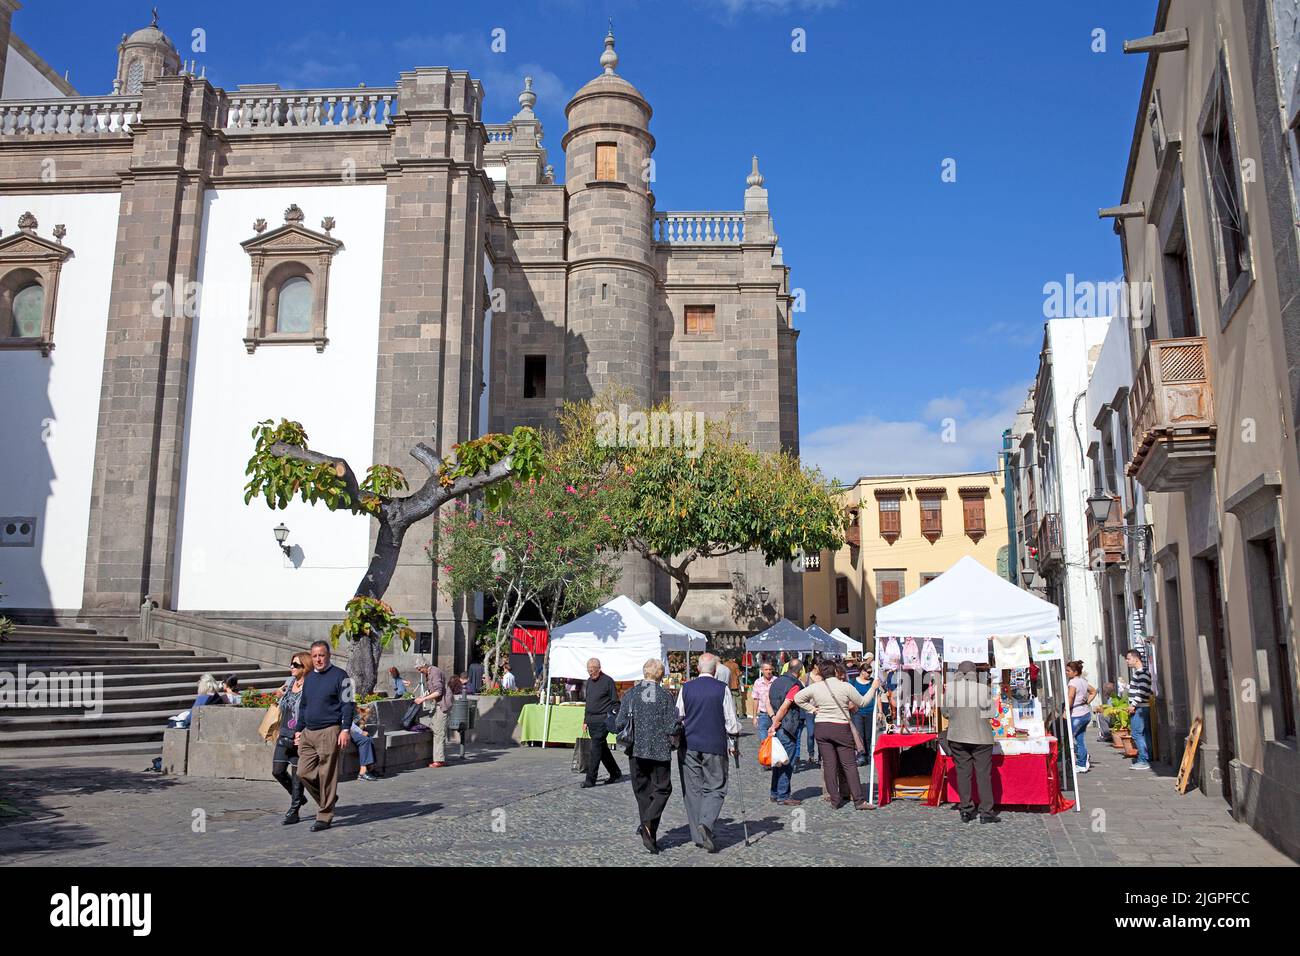 Marché derrière la cathédrale Santa Ana, Plaza del Pilar Nuevo, vieille ville, Vegueta, Las Palmas, Grand Canary, Îles Canaries, Espagne, Europe Banque D'Images